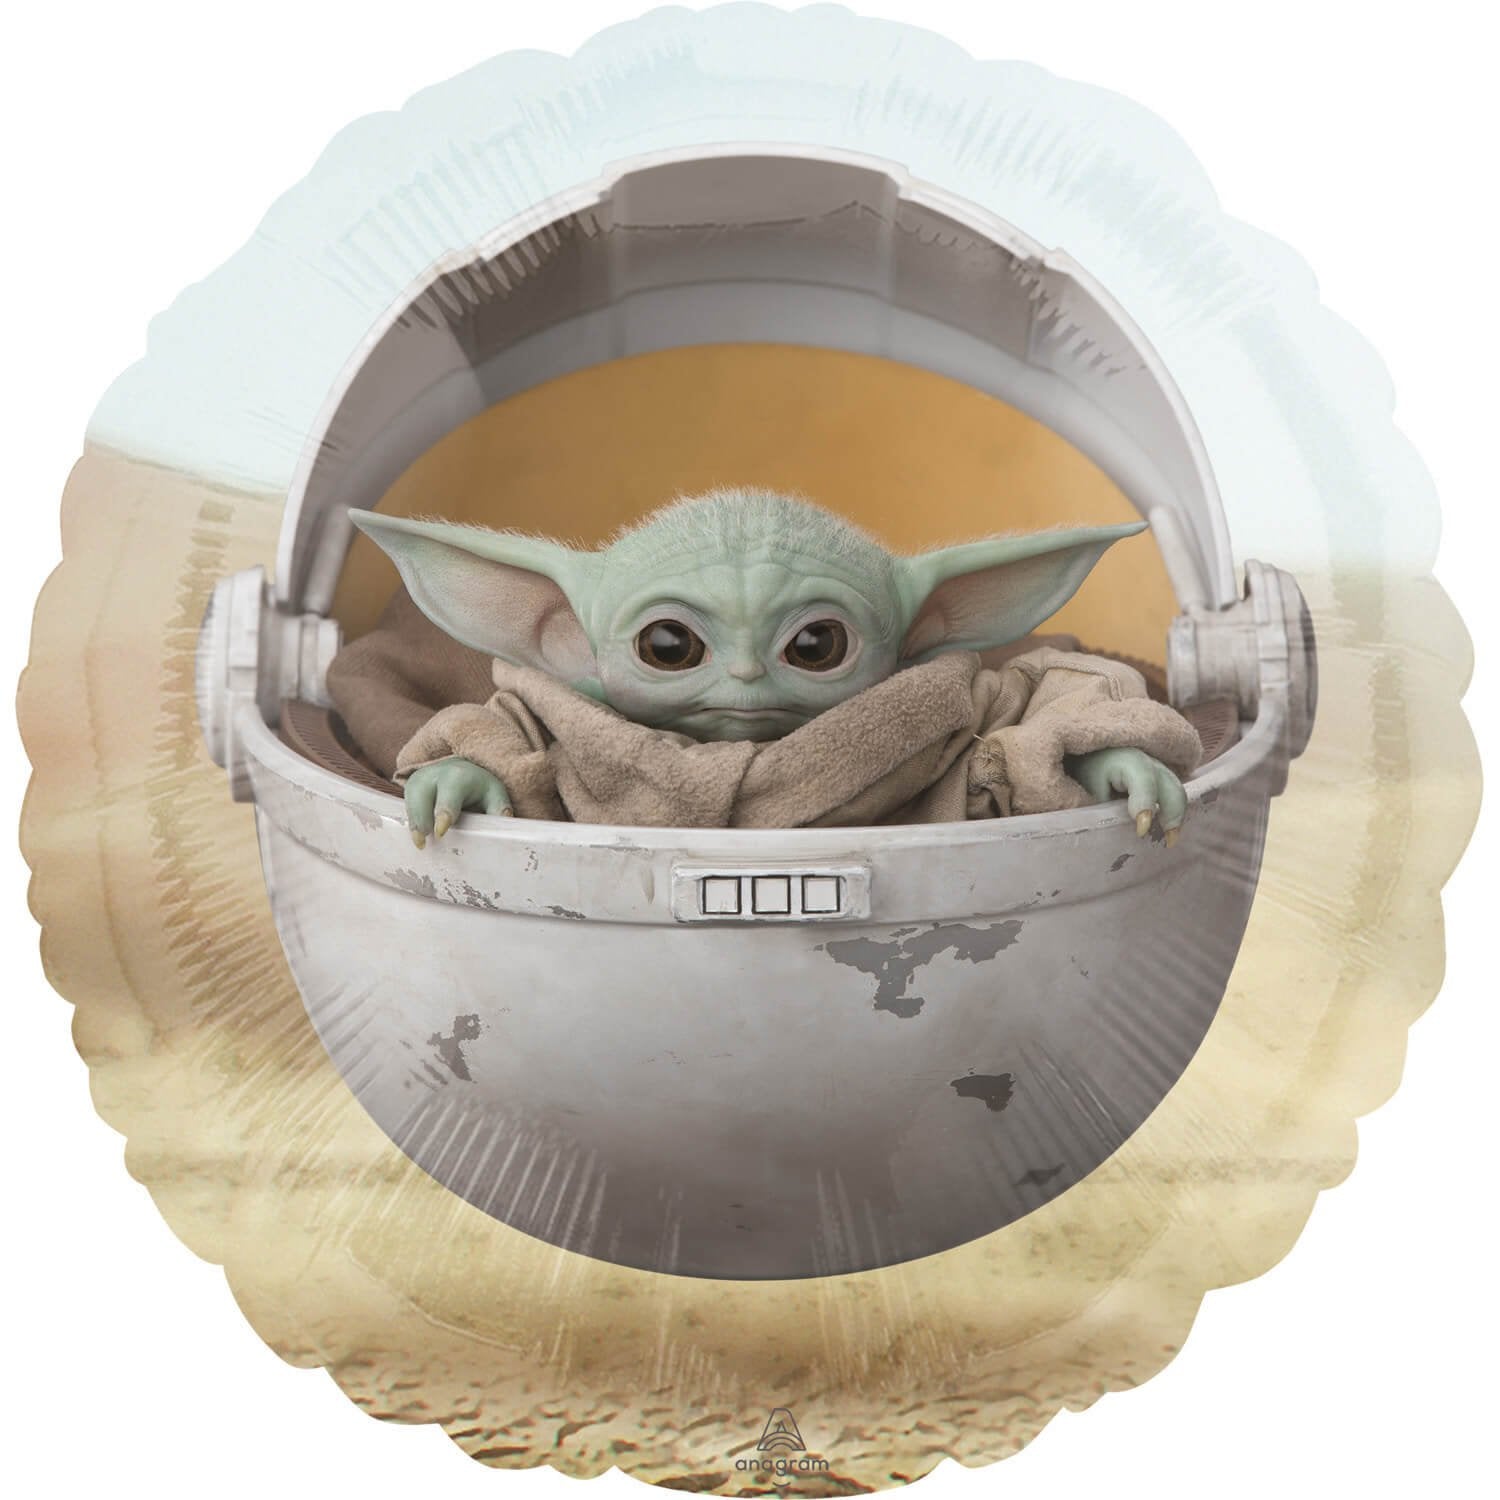 Star Wars Baby Yoda Grogu ballon